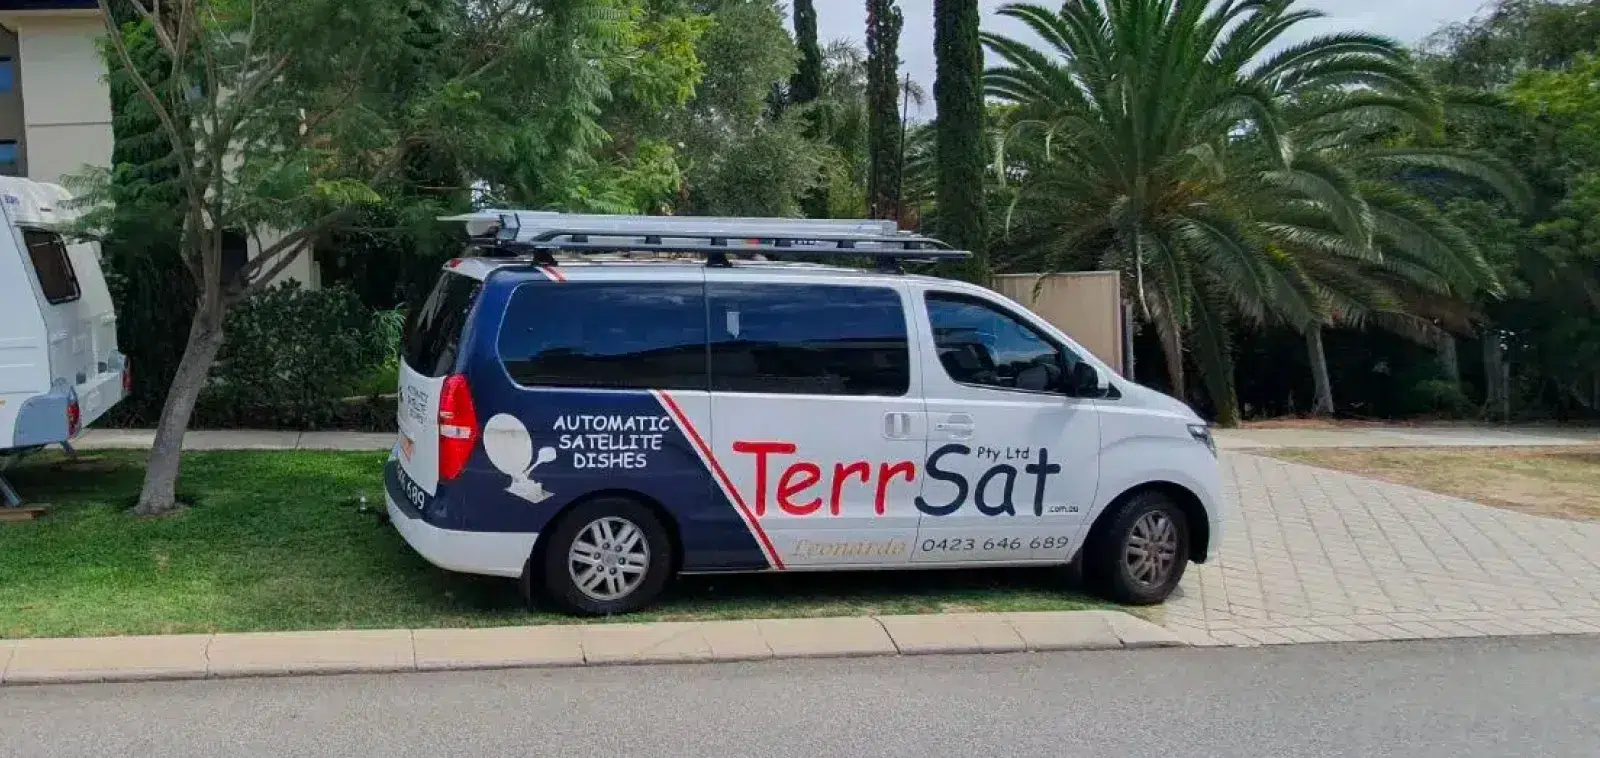 A photo of the TerrSat van, next to a camper van.